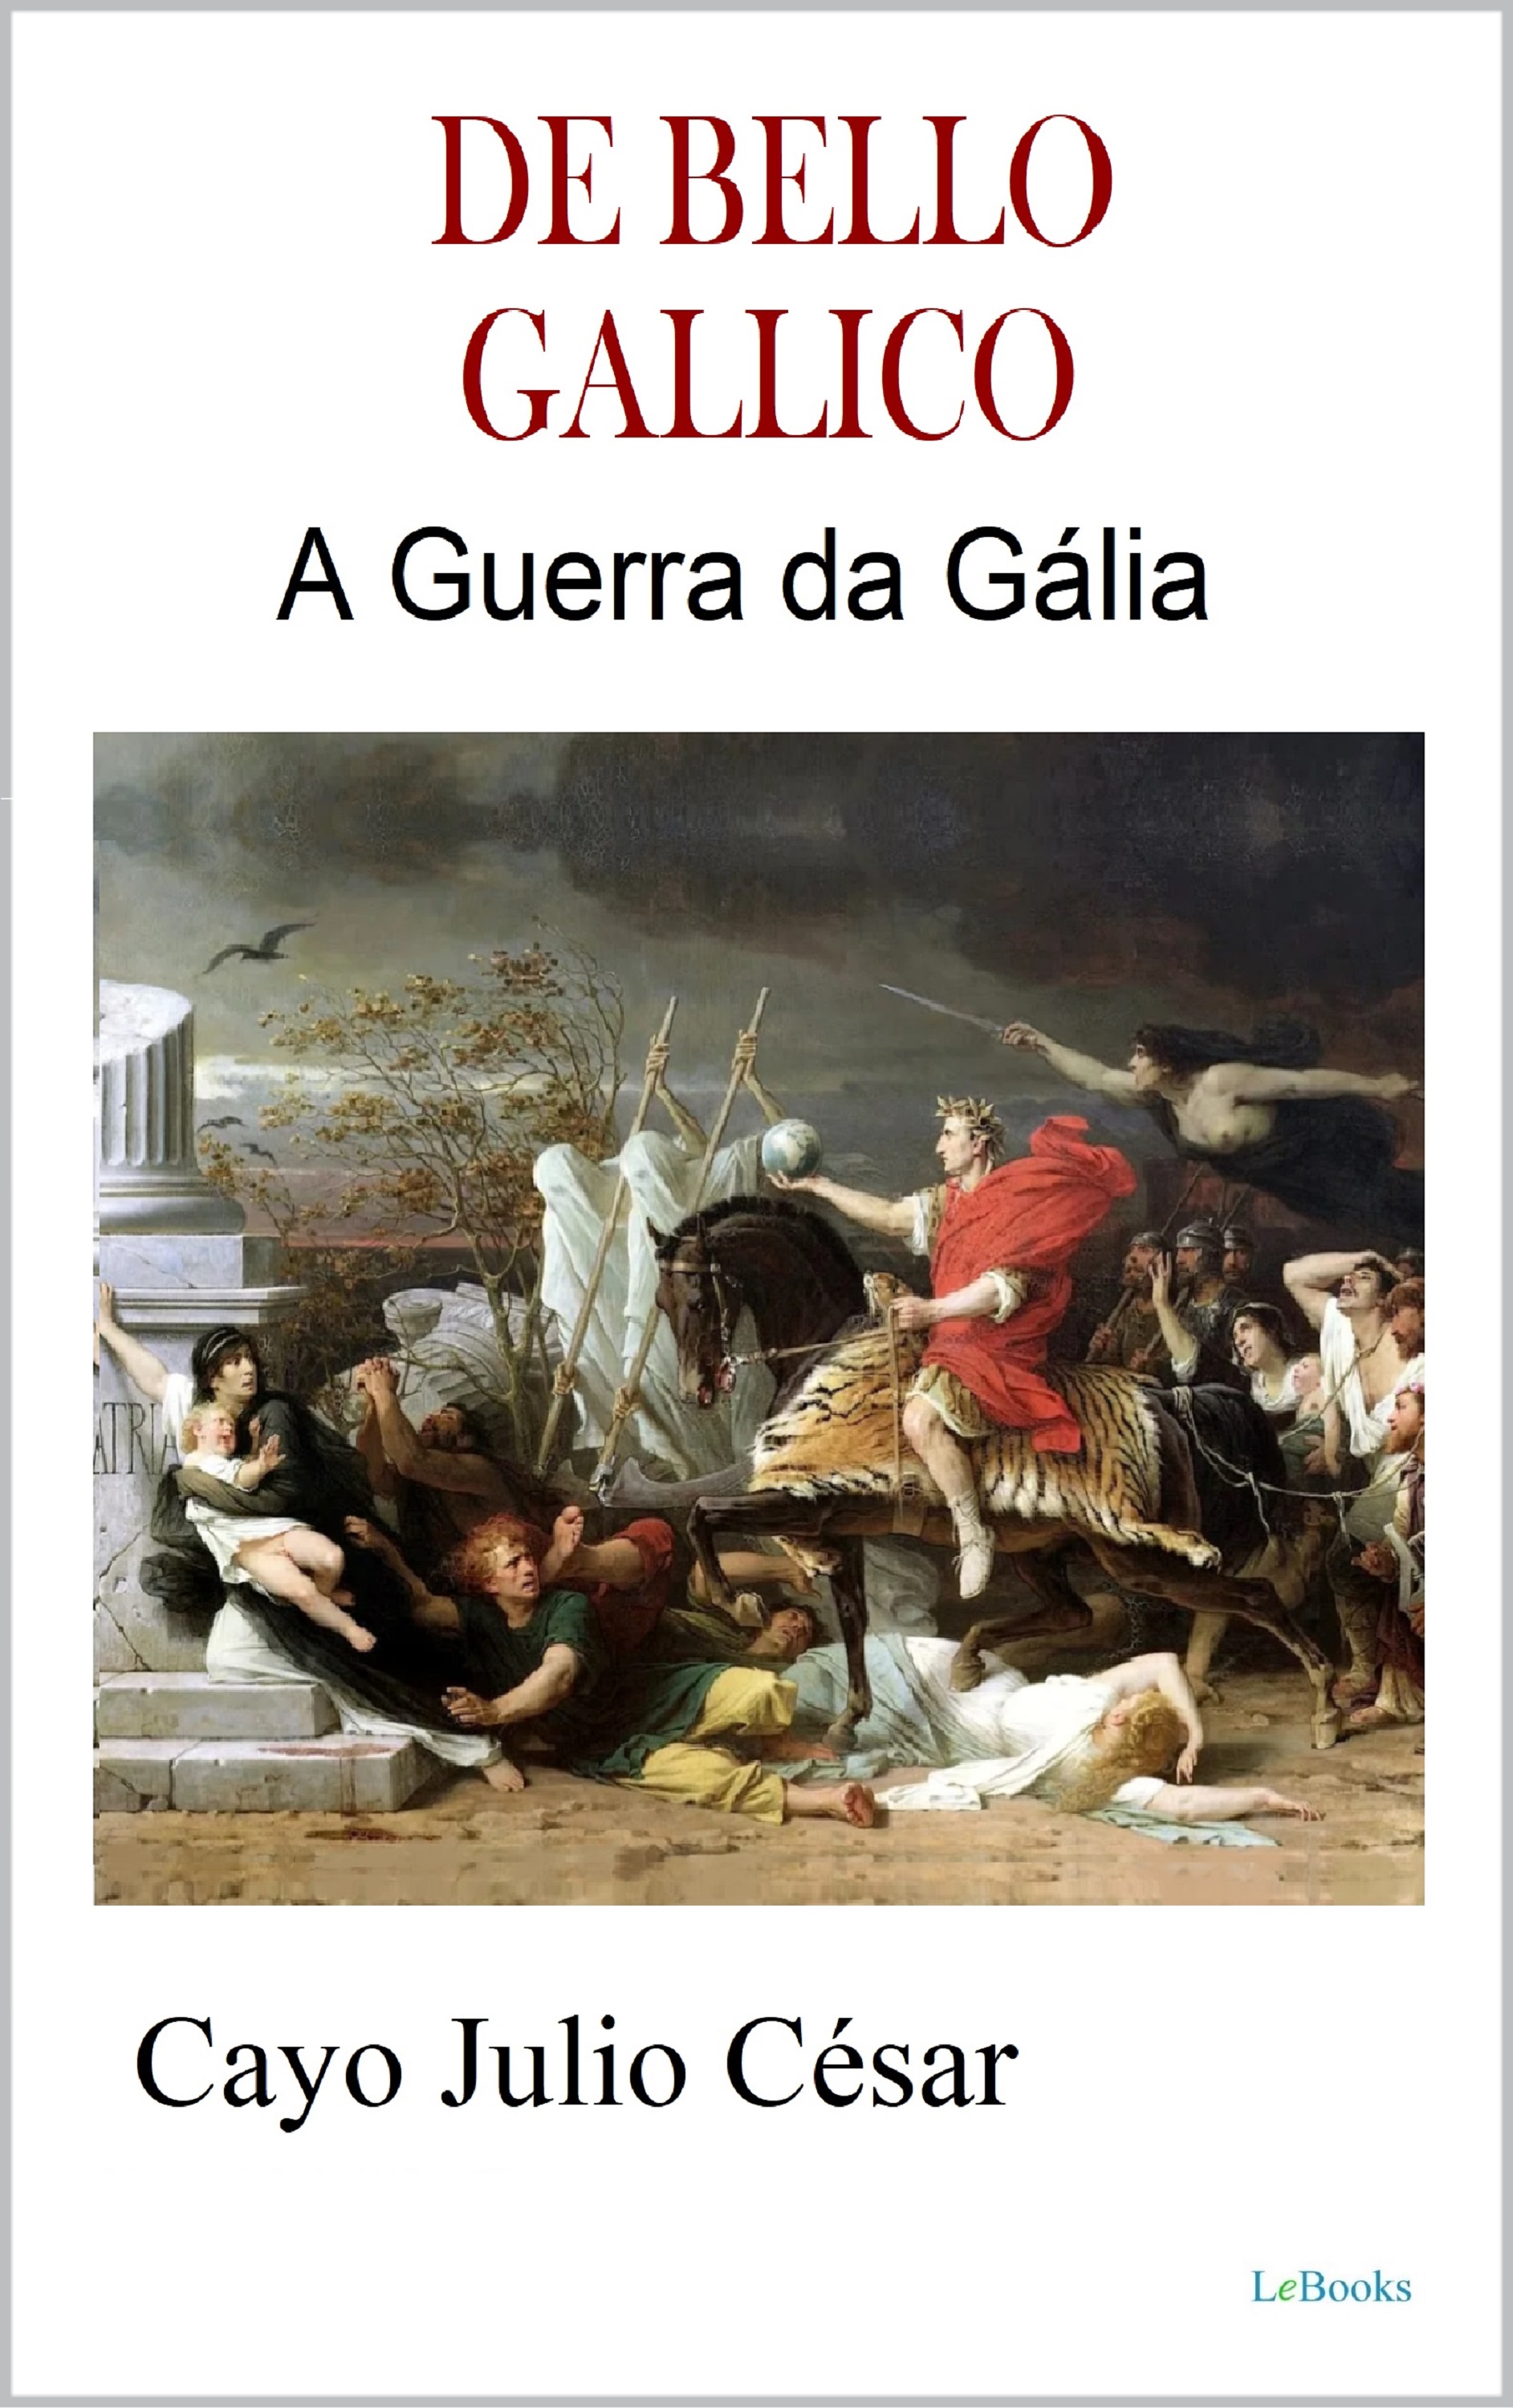 DE BELLO GALLICO